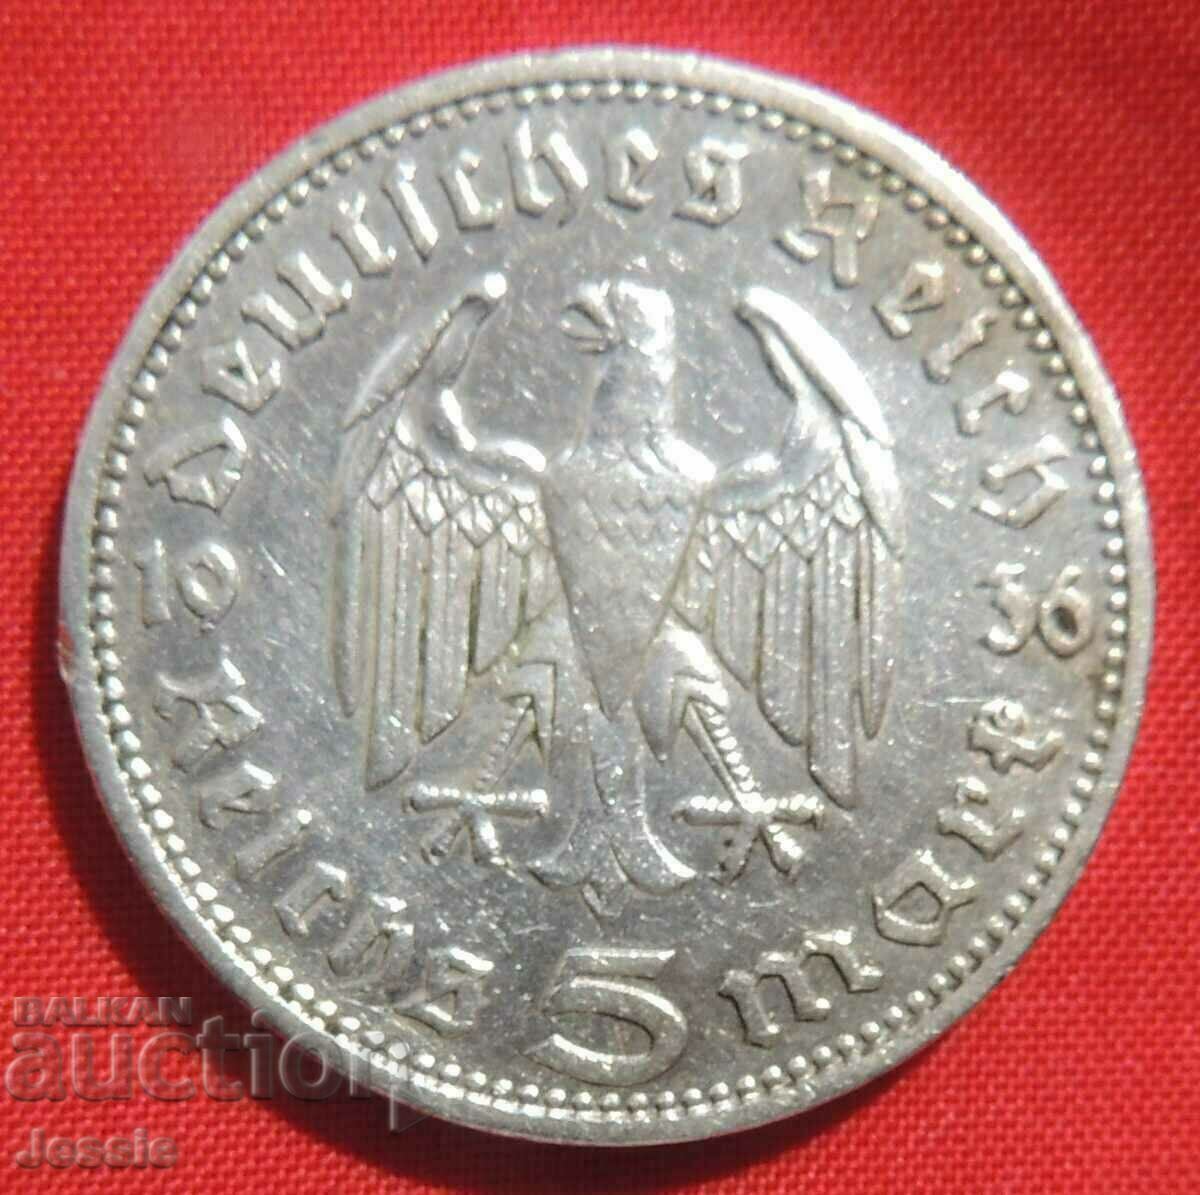 5 Γραμματόσημα 1936 J Γερμανία ασήμι